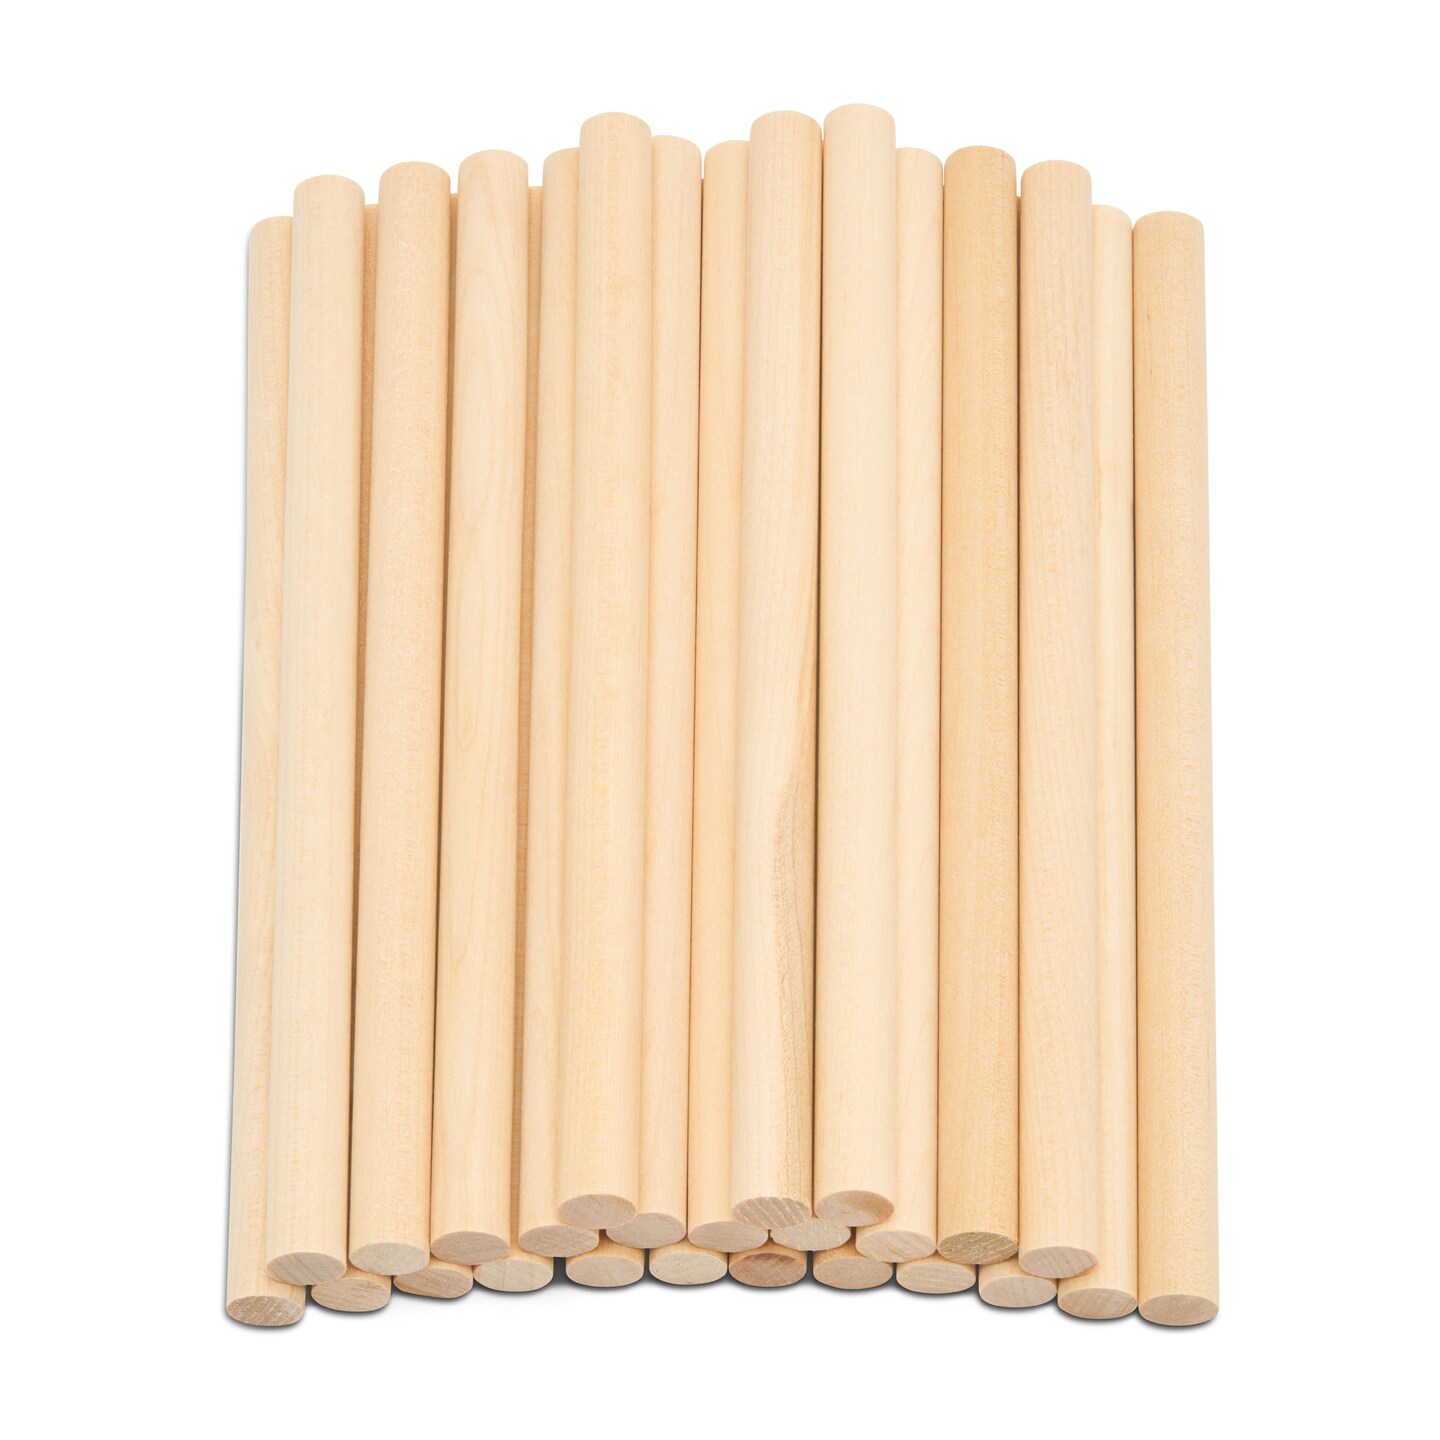 Round Wooden Dowel Sticks 3-4 Inch at Crafty Sticks